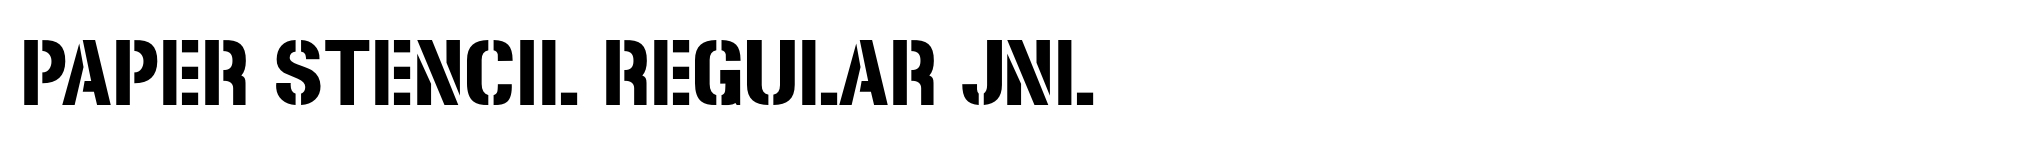 Paper Stencil Regular JNL image